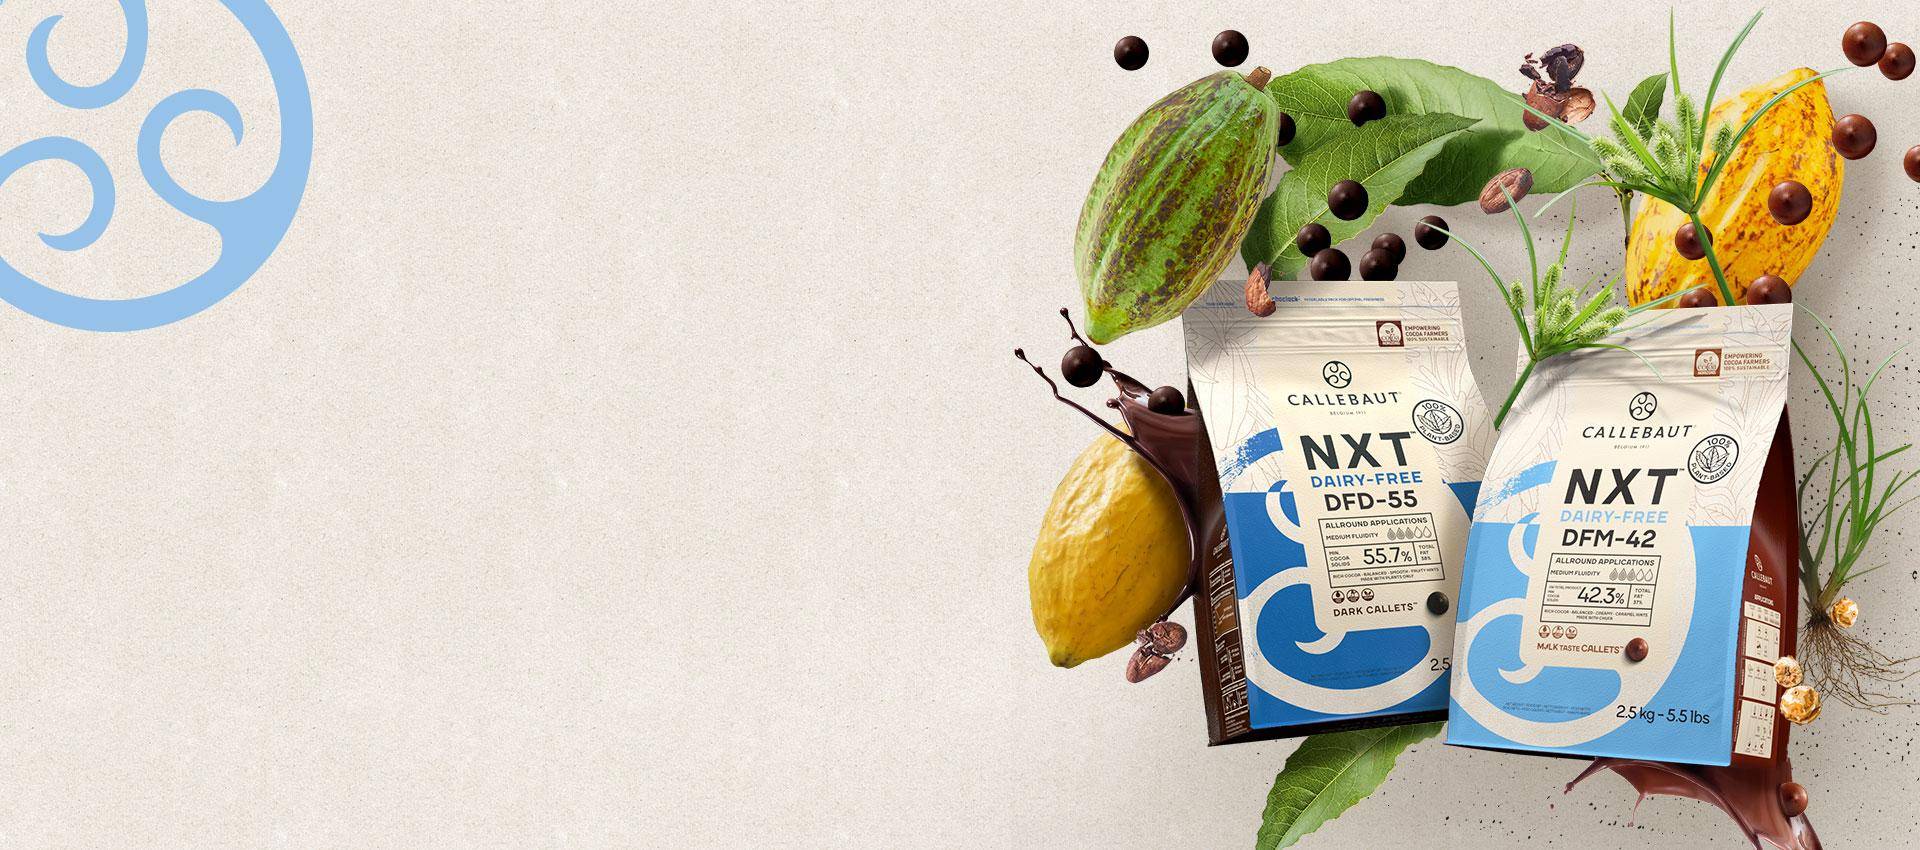 Callebaut NXT dairy free chocolate 